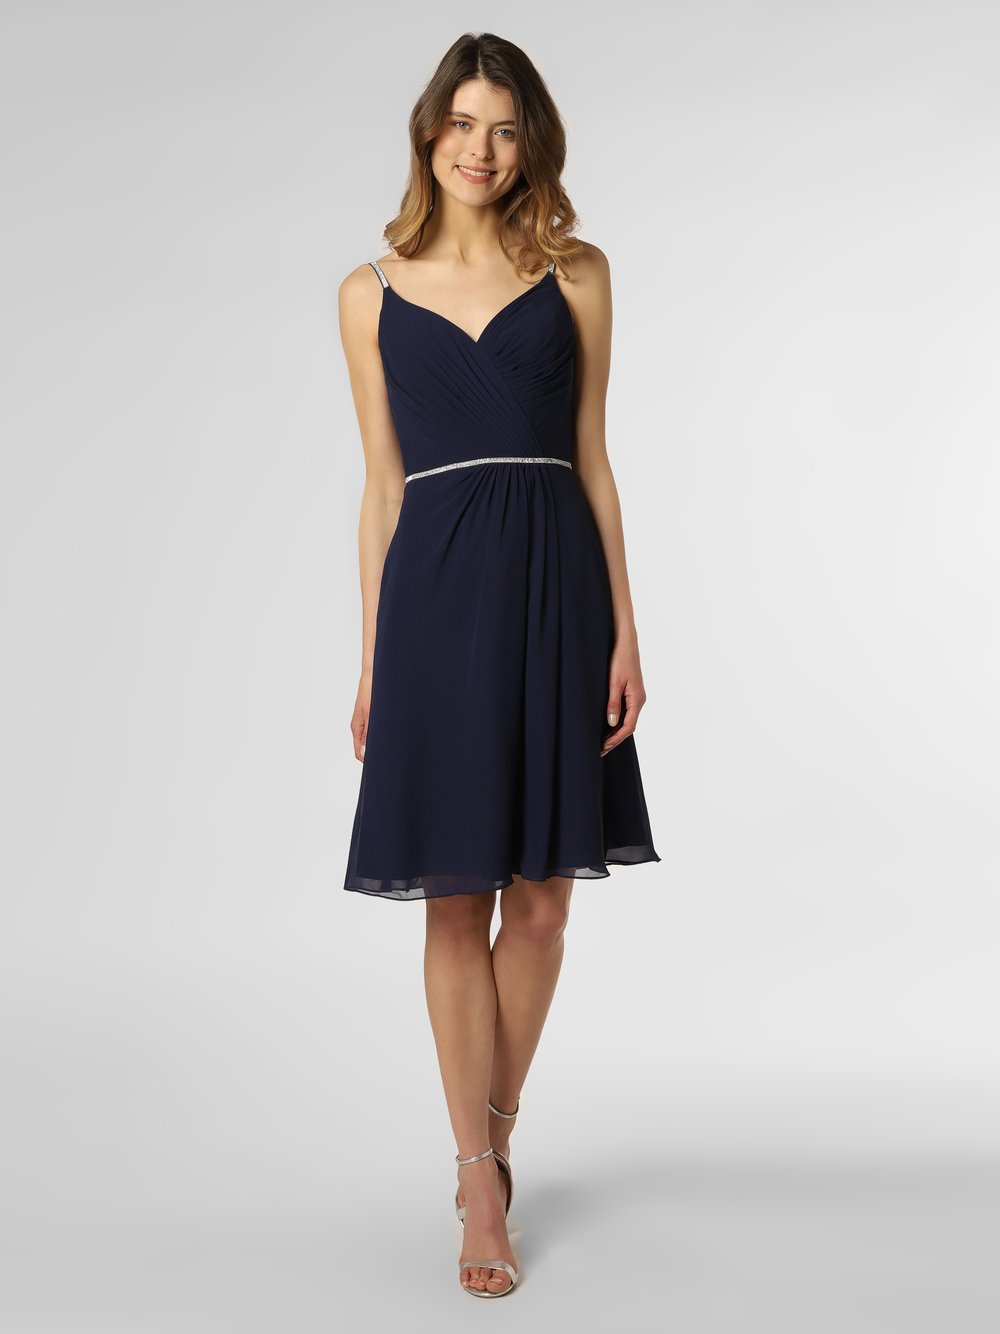 Obraz przedstawiający Luxuar Fashion Damska sukienka wieczorowa Kobiety niebieski jednolity, 38